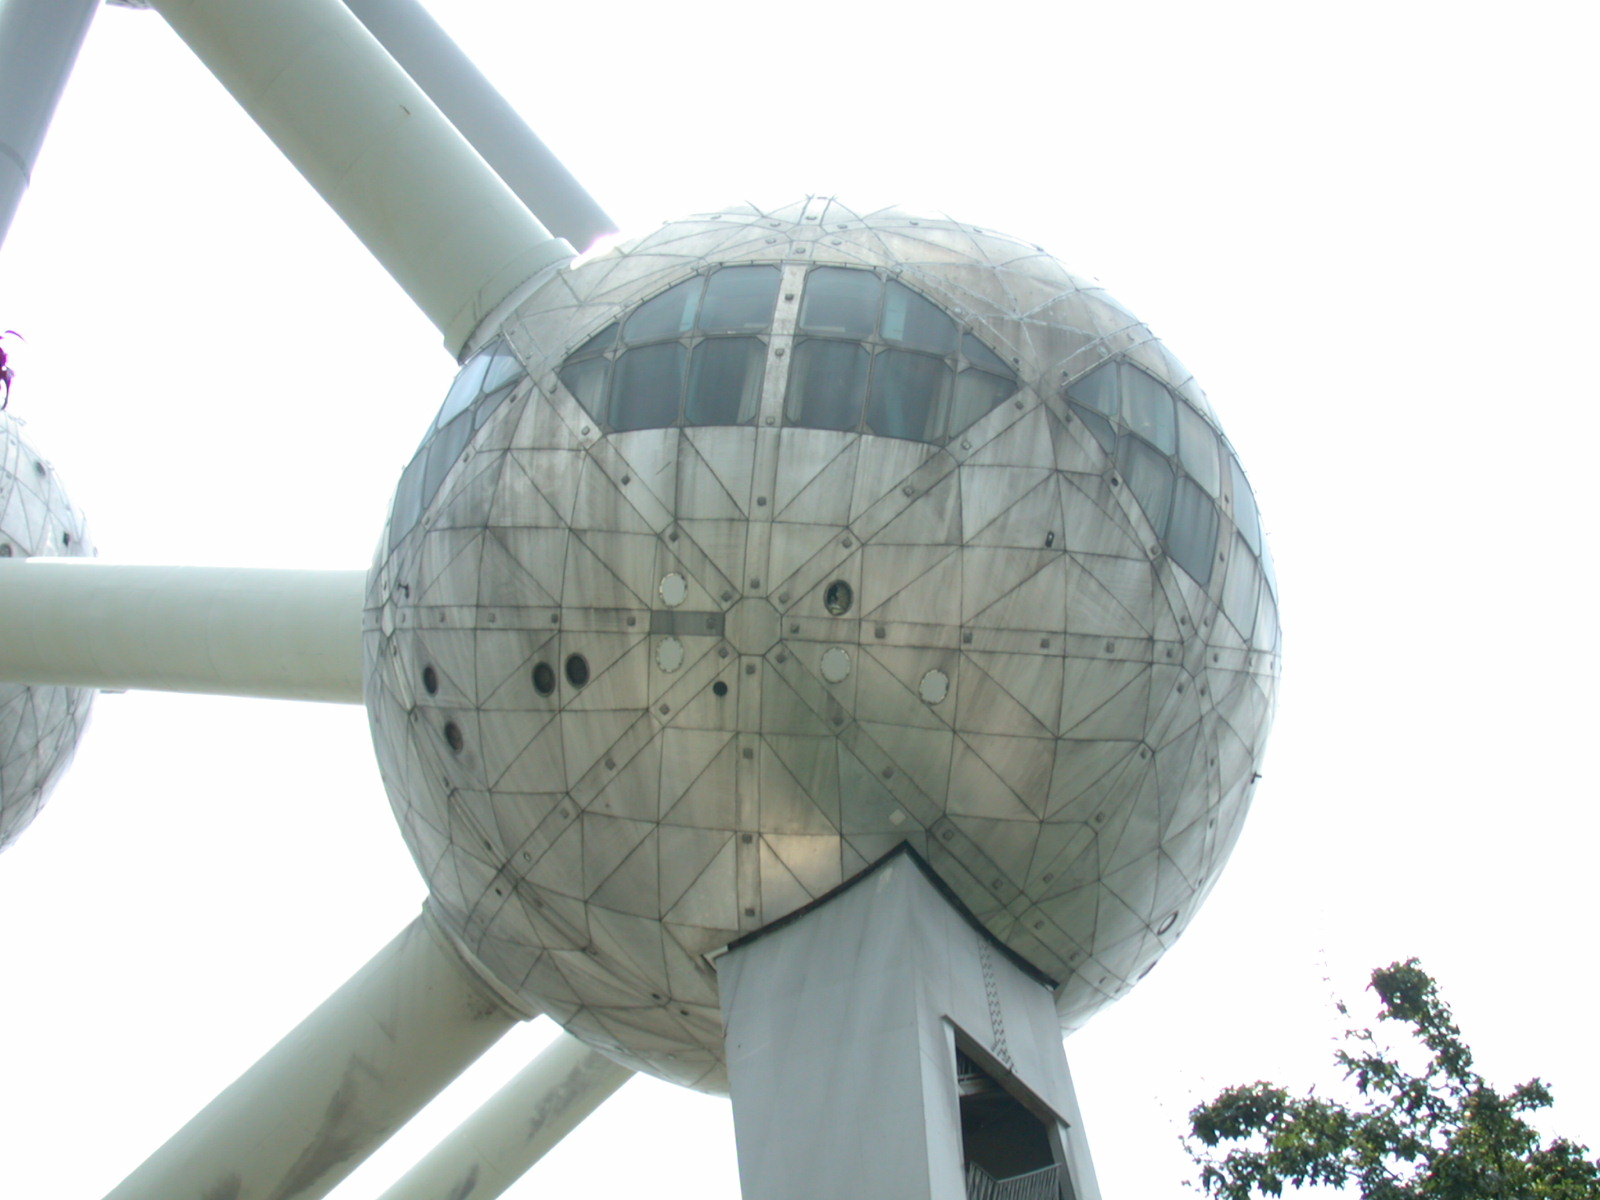 brussels bruxelles monument sphere round globe metal atomium